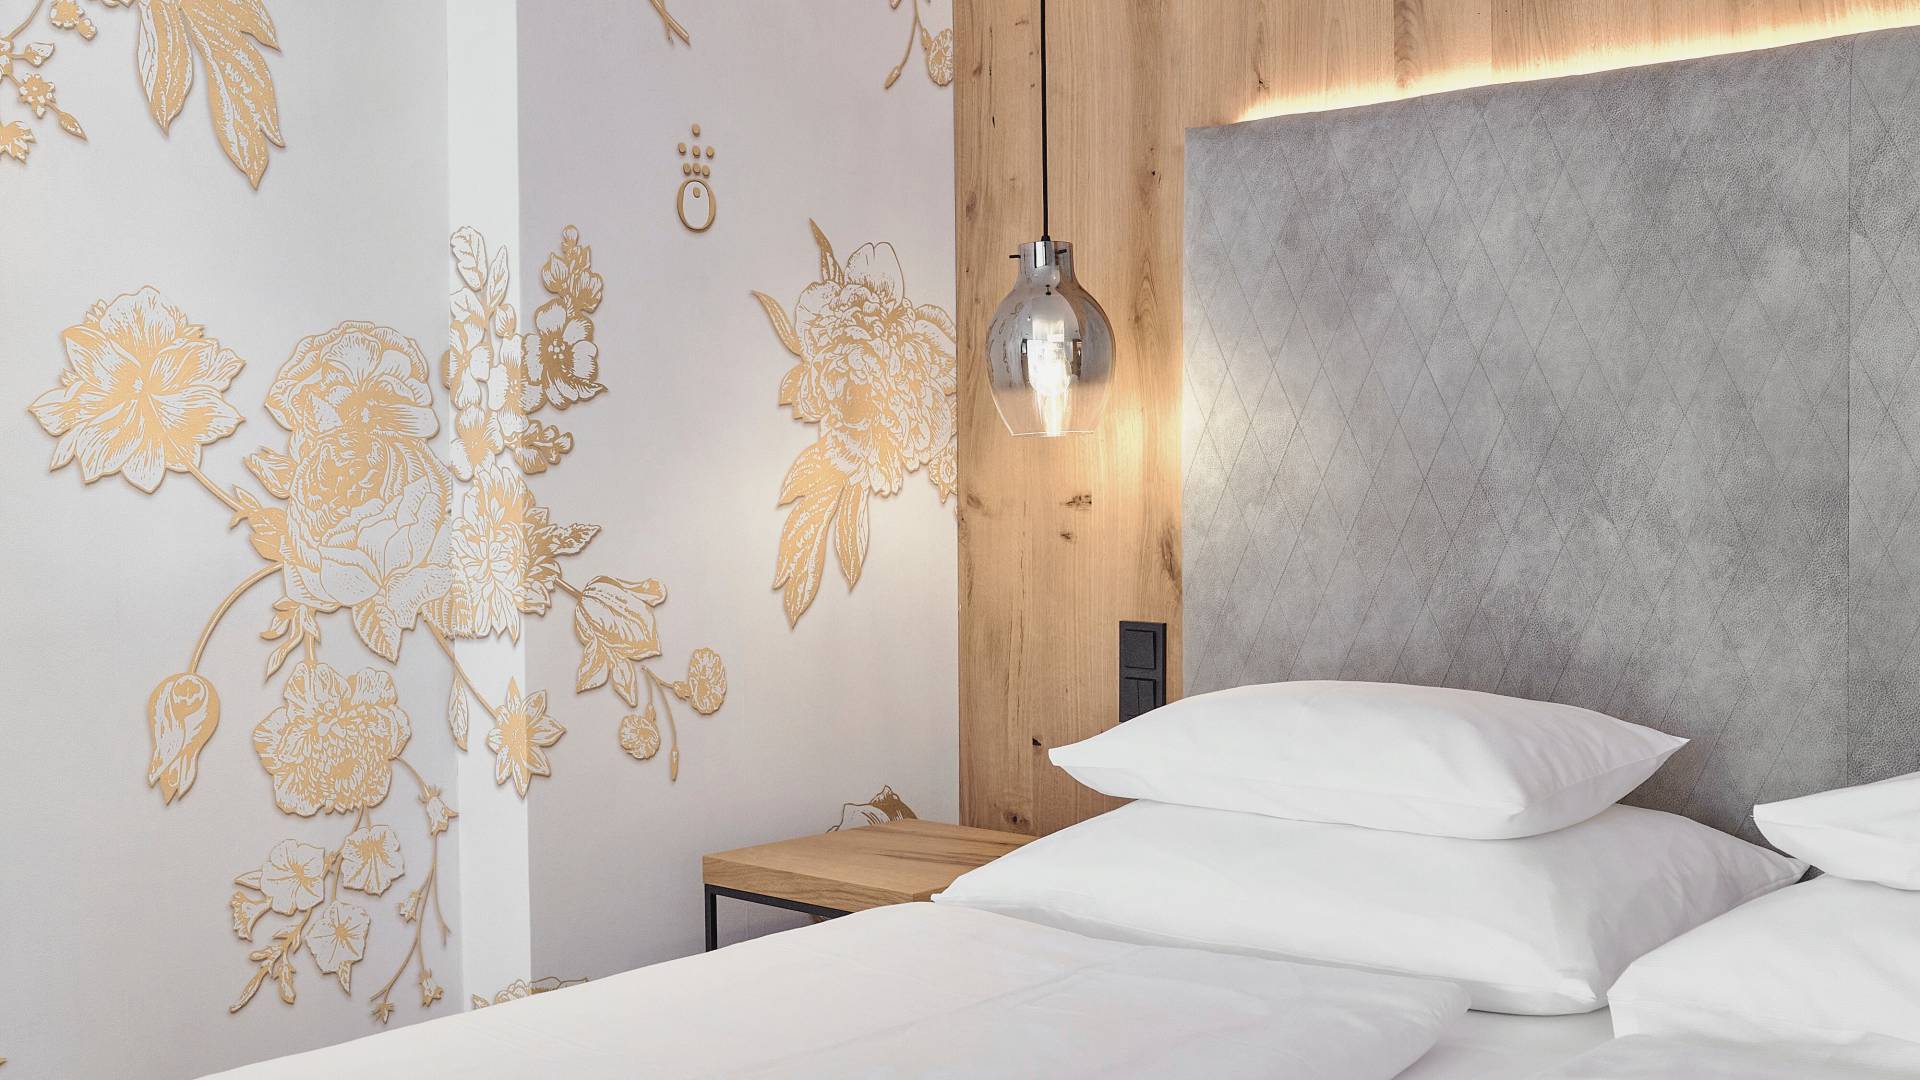  Bett im Hotelzimmer der HOCHKÖNIGIN mit stylischen Lampen und edler Tapete mit goldenen Blumen